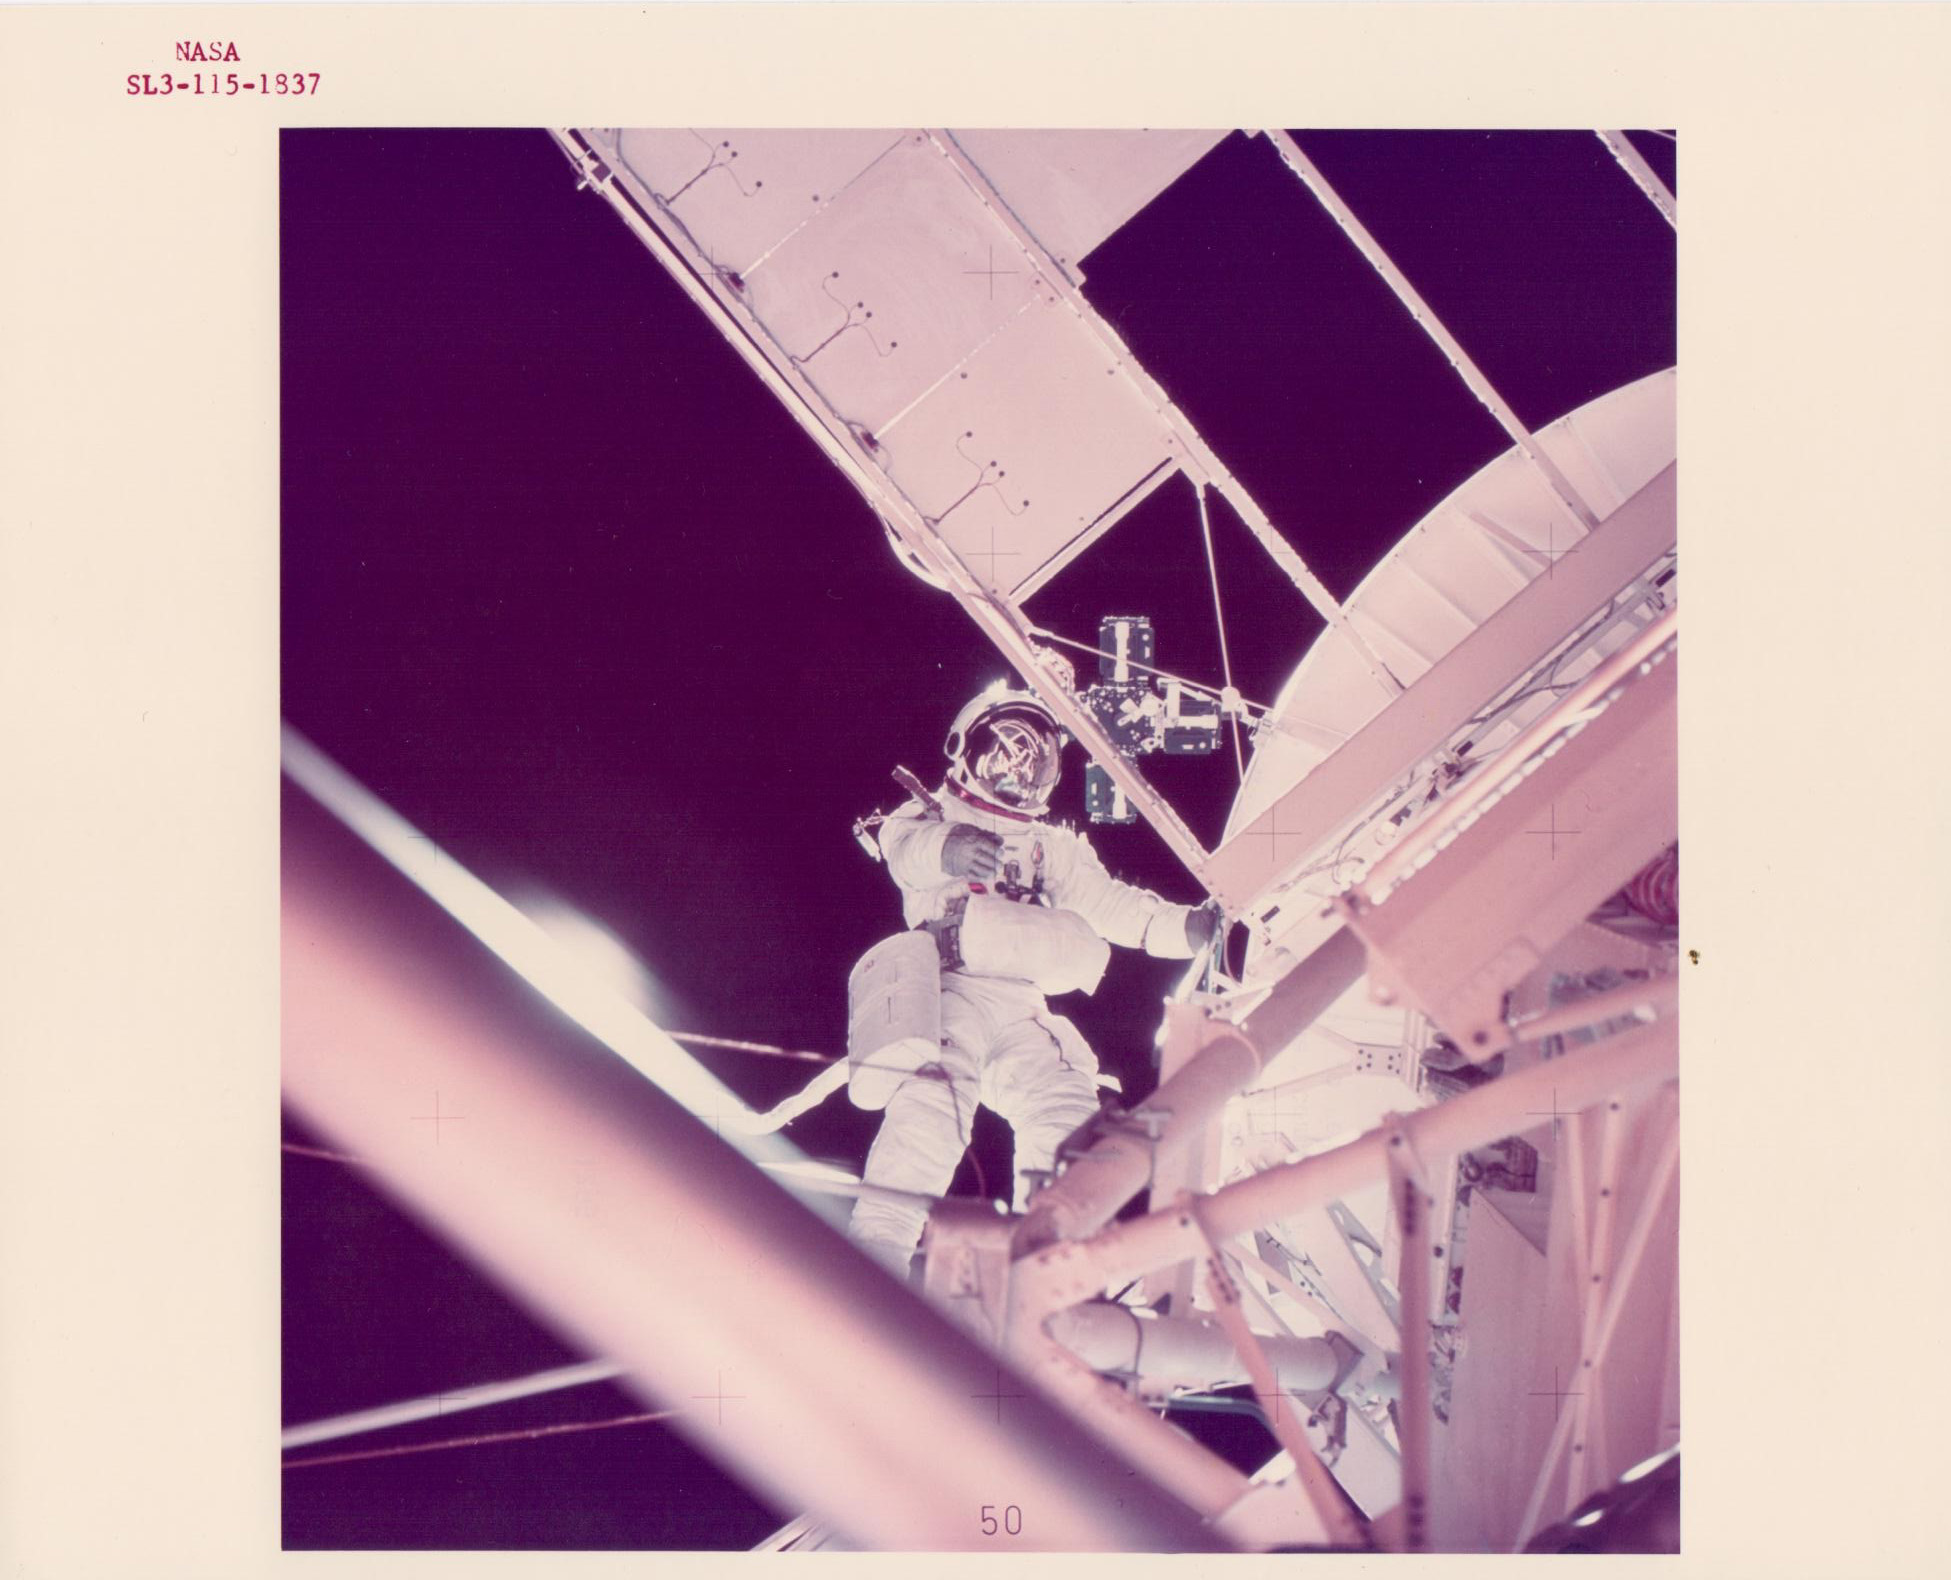 Owen Garriott working outside the spacecraft, Skylab 3, August 1973